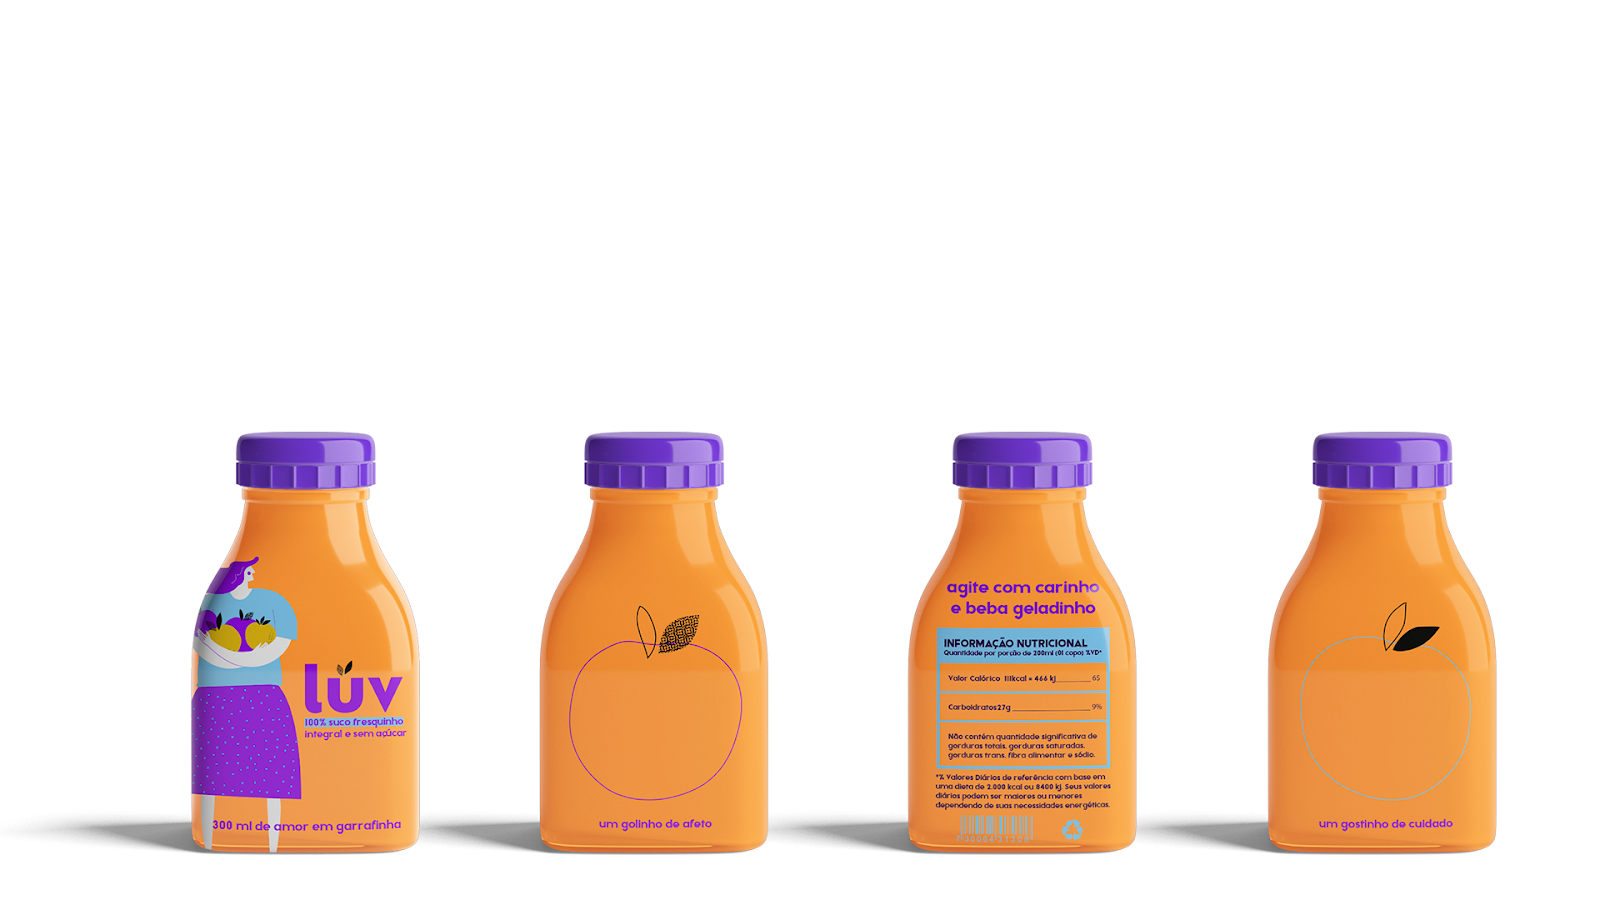 果汁饮料饮品西安oe欧亿体育app官方下载
品牌策划包装设计VI设计logo设计